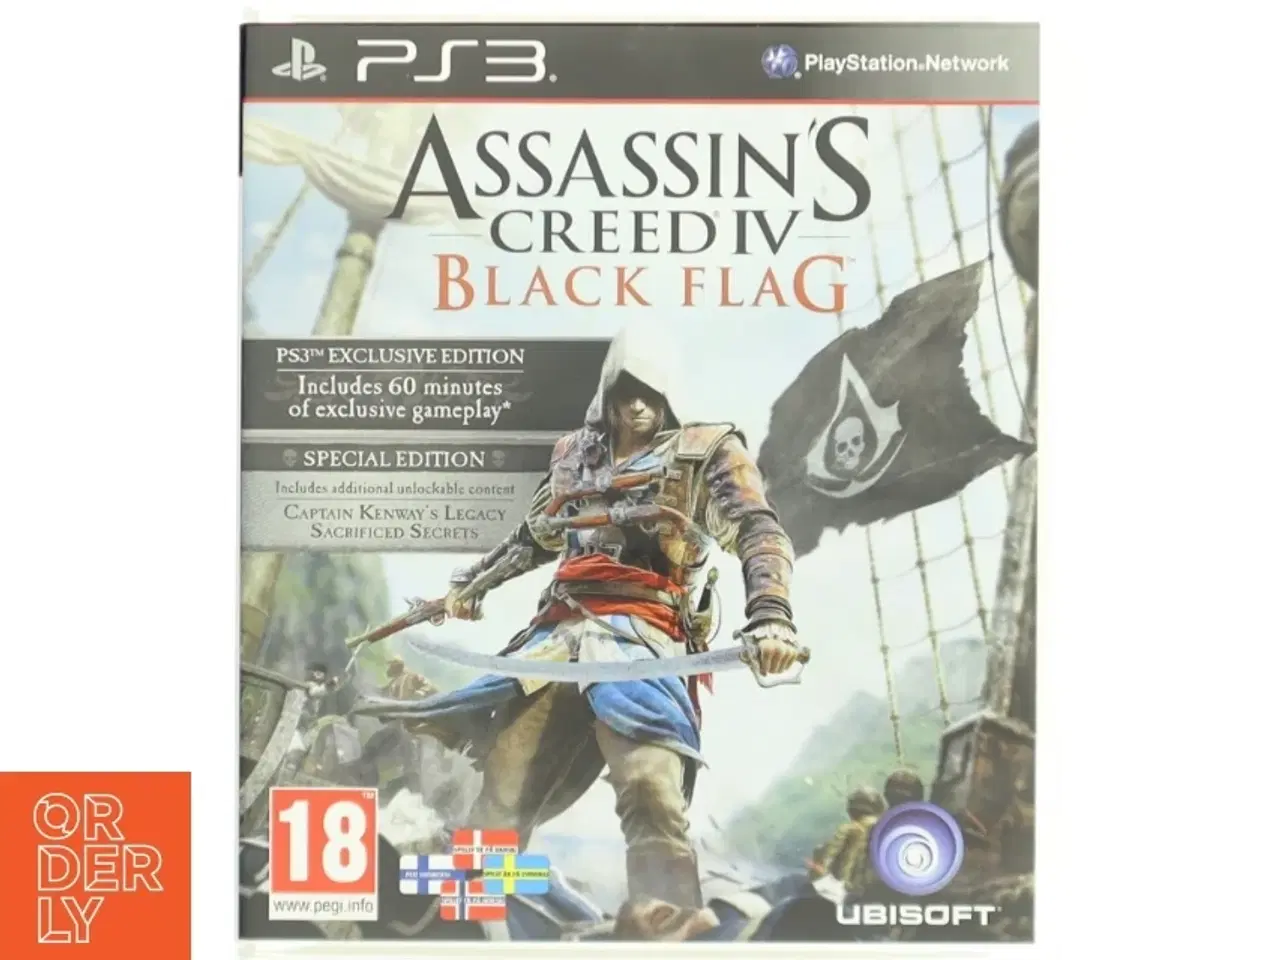 Billede 1 - Assassin's Creed IV Black Flag PS3-spil fra Ubisoft